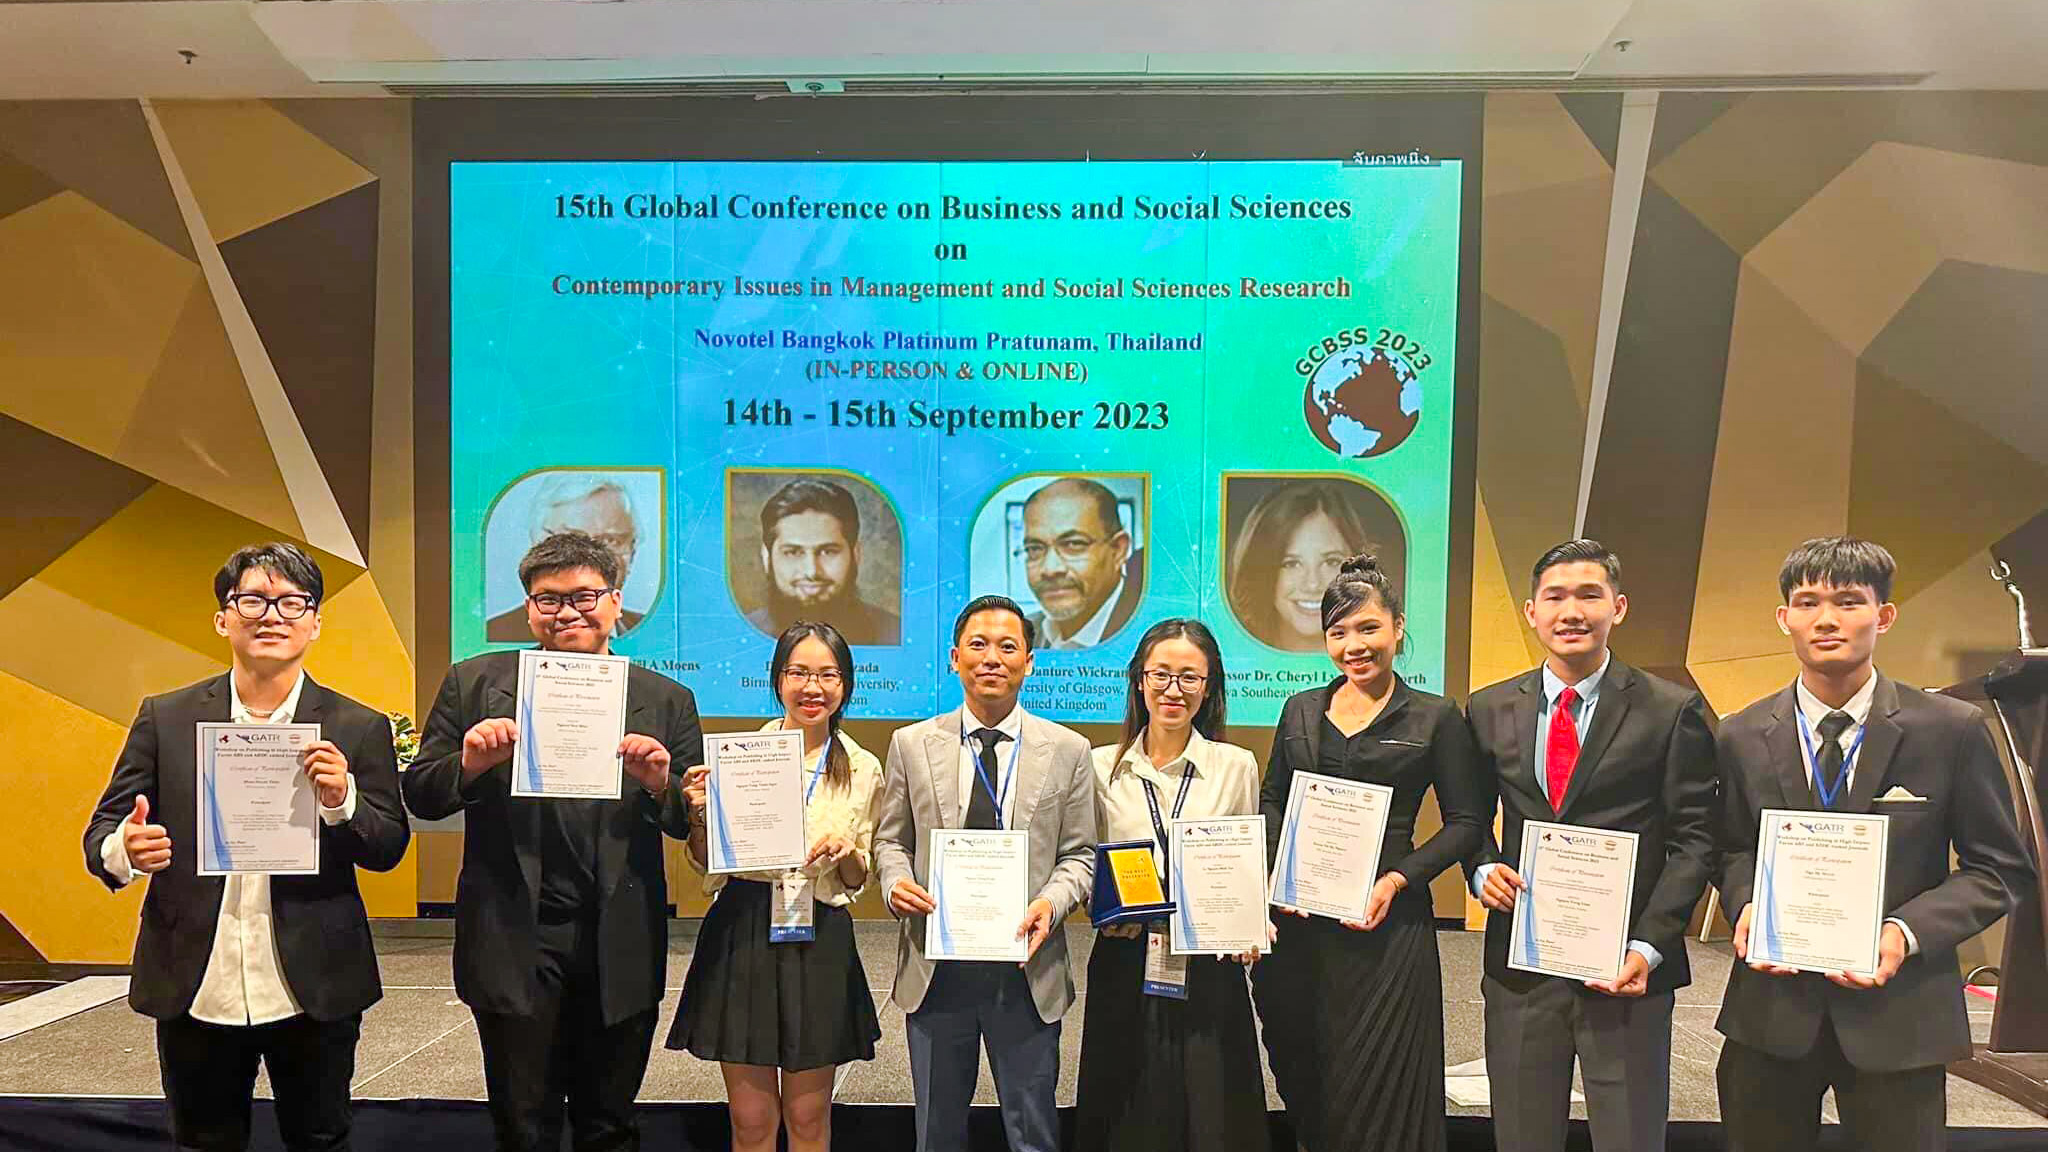 Sinh viên Đại học FPT Cần Thơ tự tin báo cáo trong Hội nghị toàn cầu về Kinh doanh và Khoa học xã hội tại Thái Lan